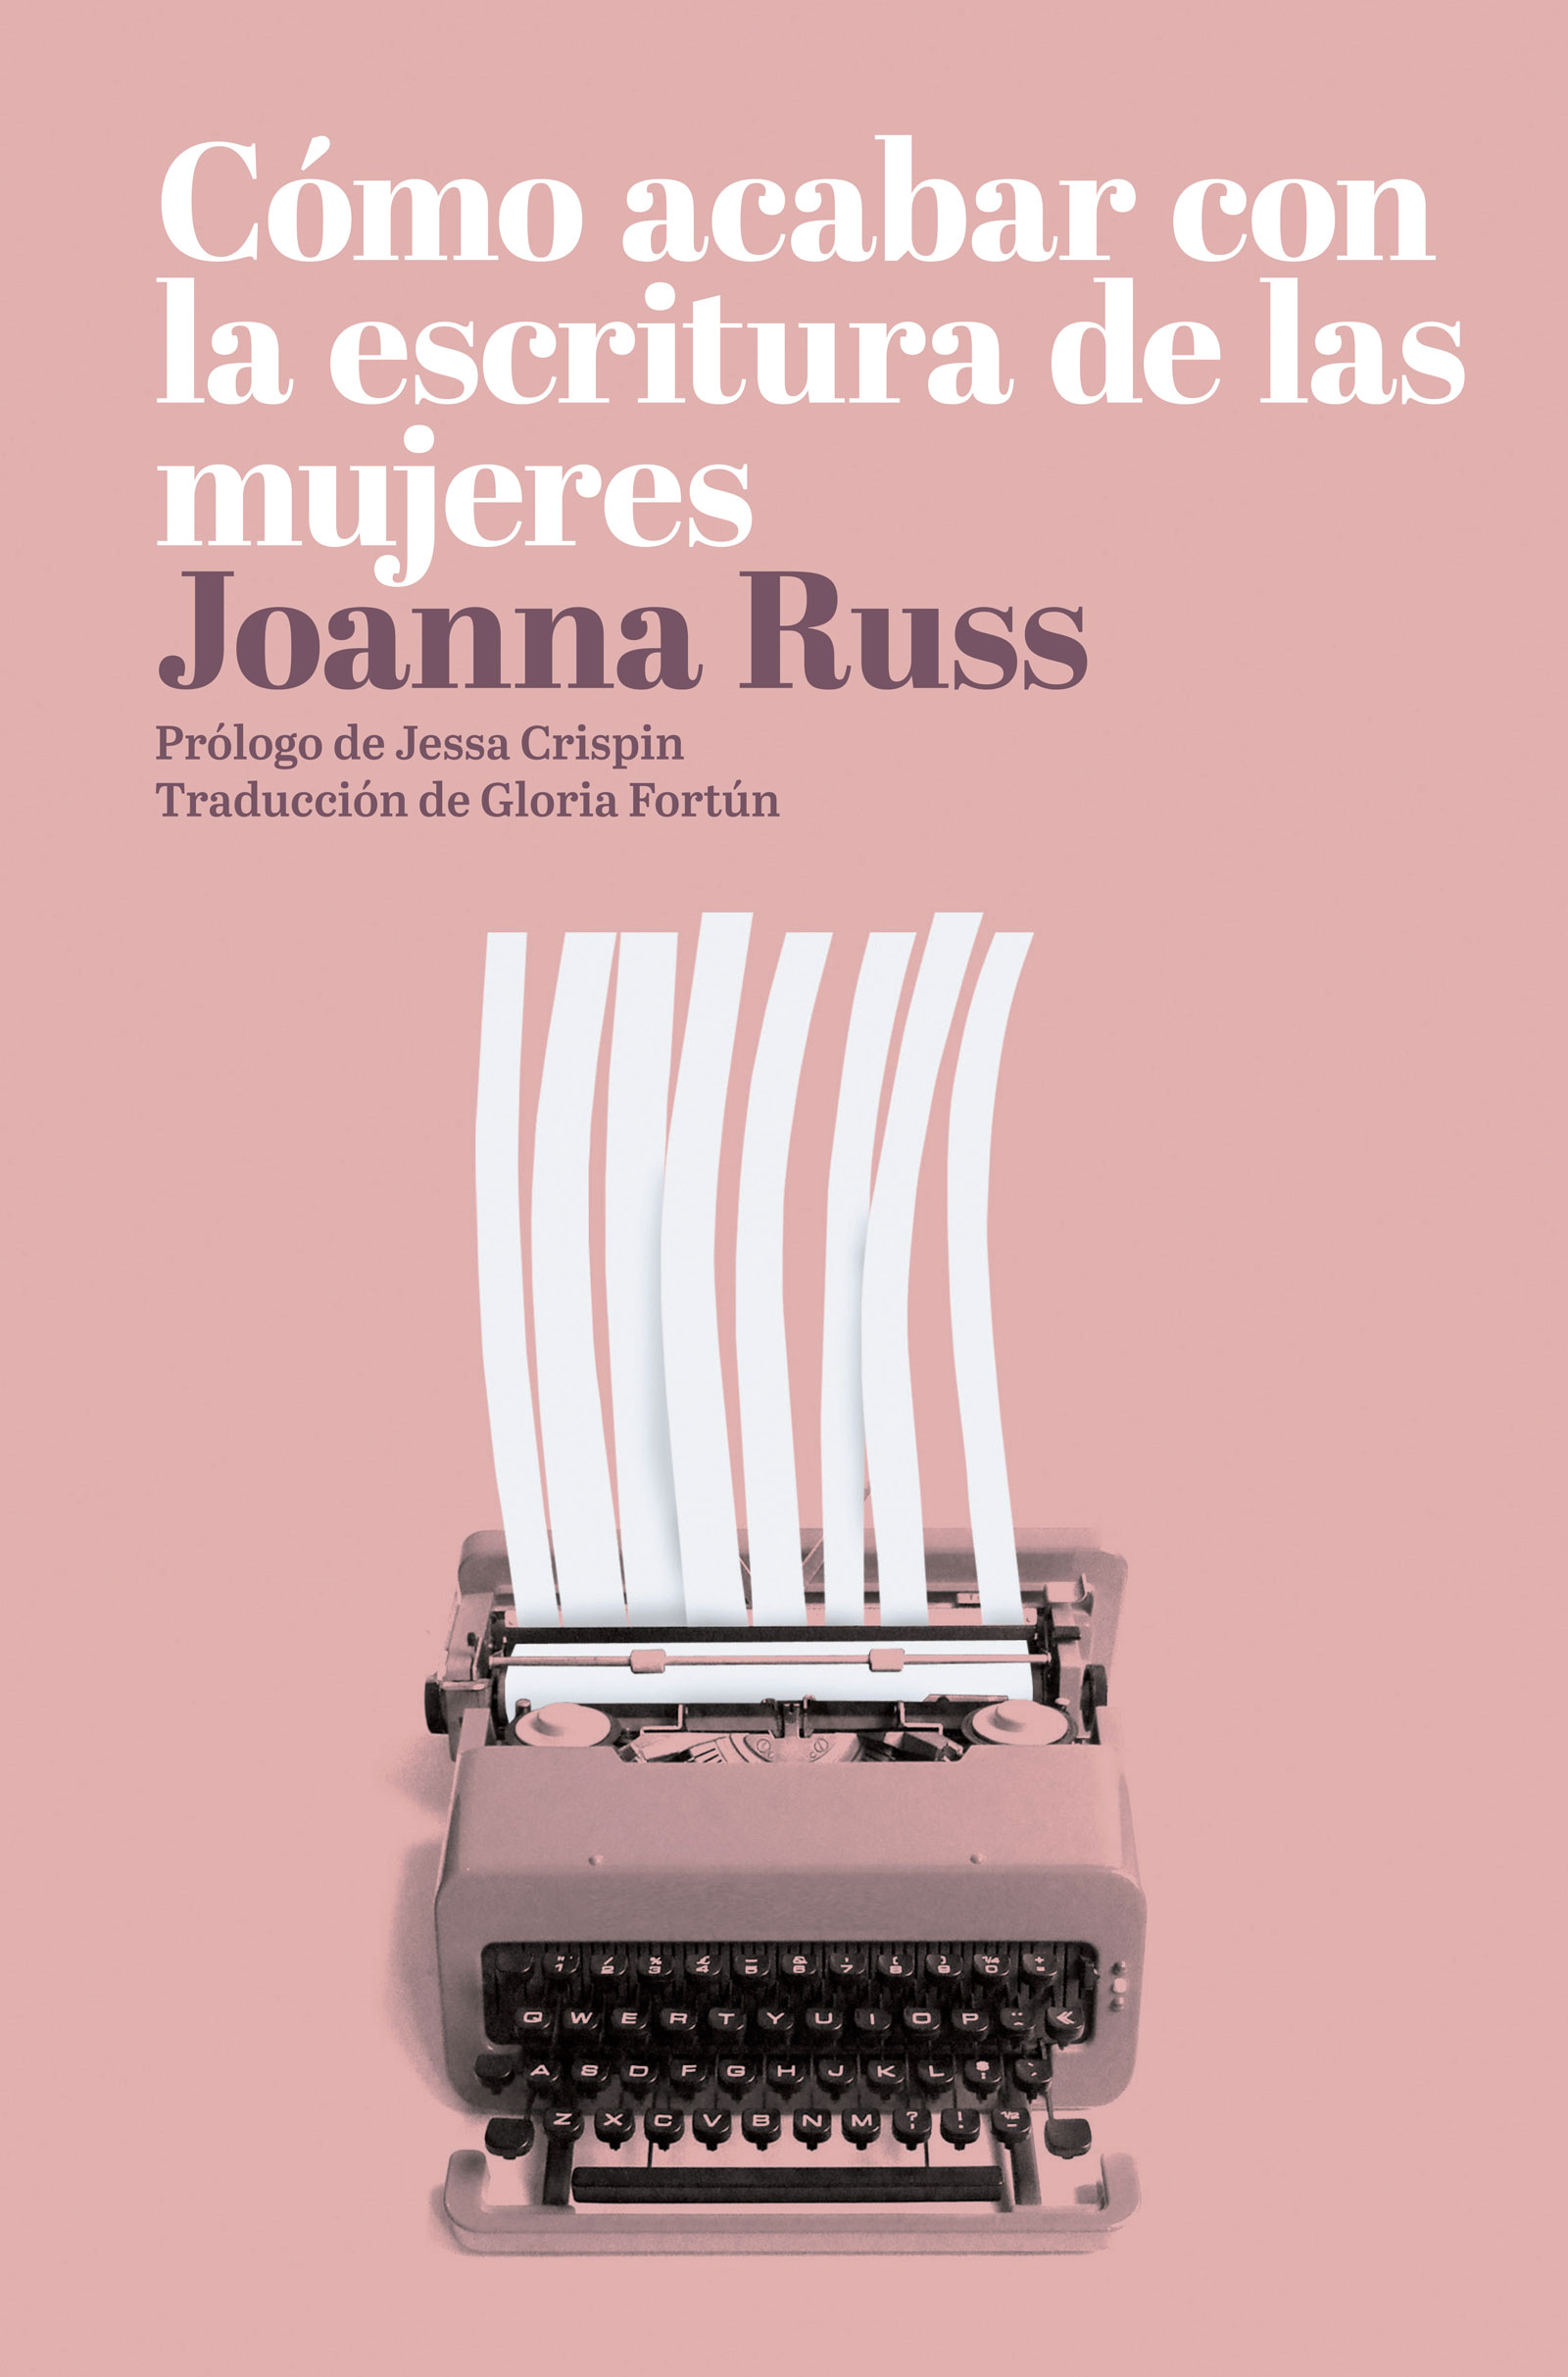 Joanna Russ - Mujeres que escriben